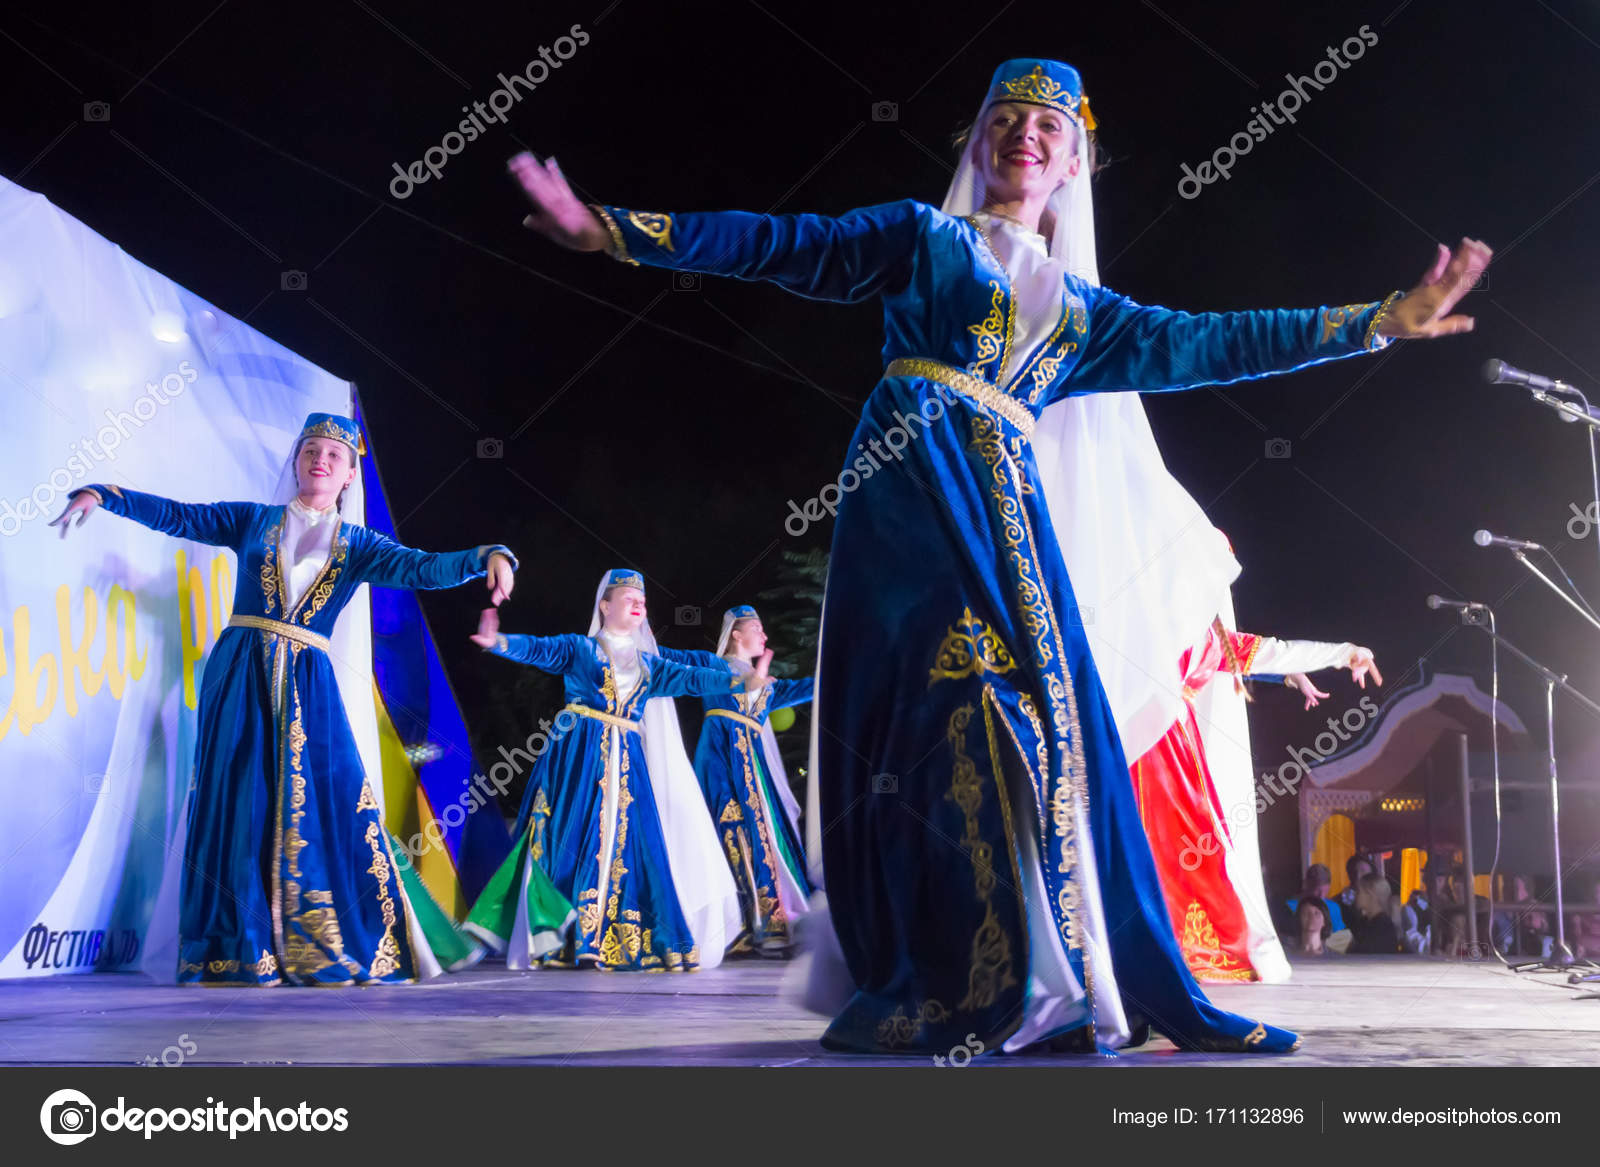 Offentliggørelse dome Gendanne Dansere i tyrkisk traditionel tøj udfører på scenen under – Redaktionelle  stock-fotos © OlyaSolodenko #171132896